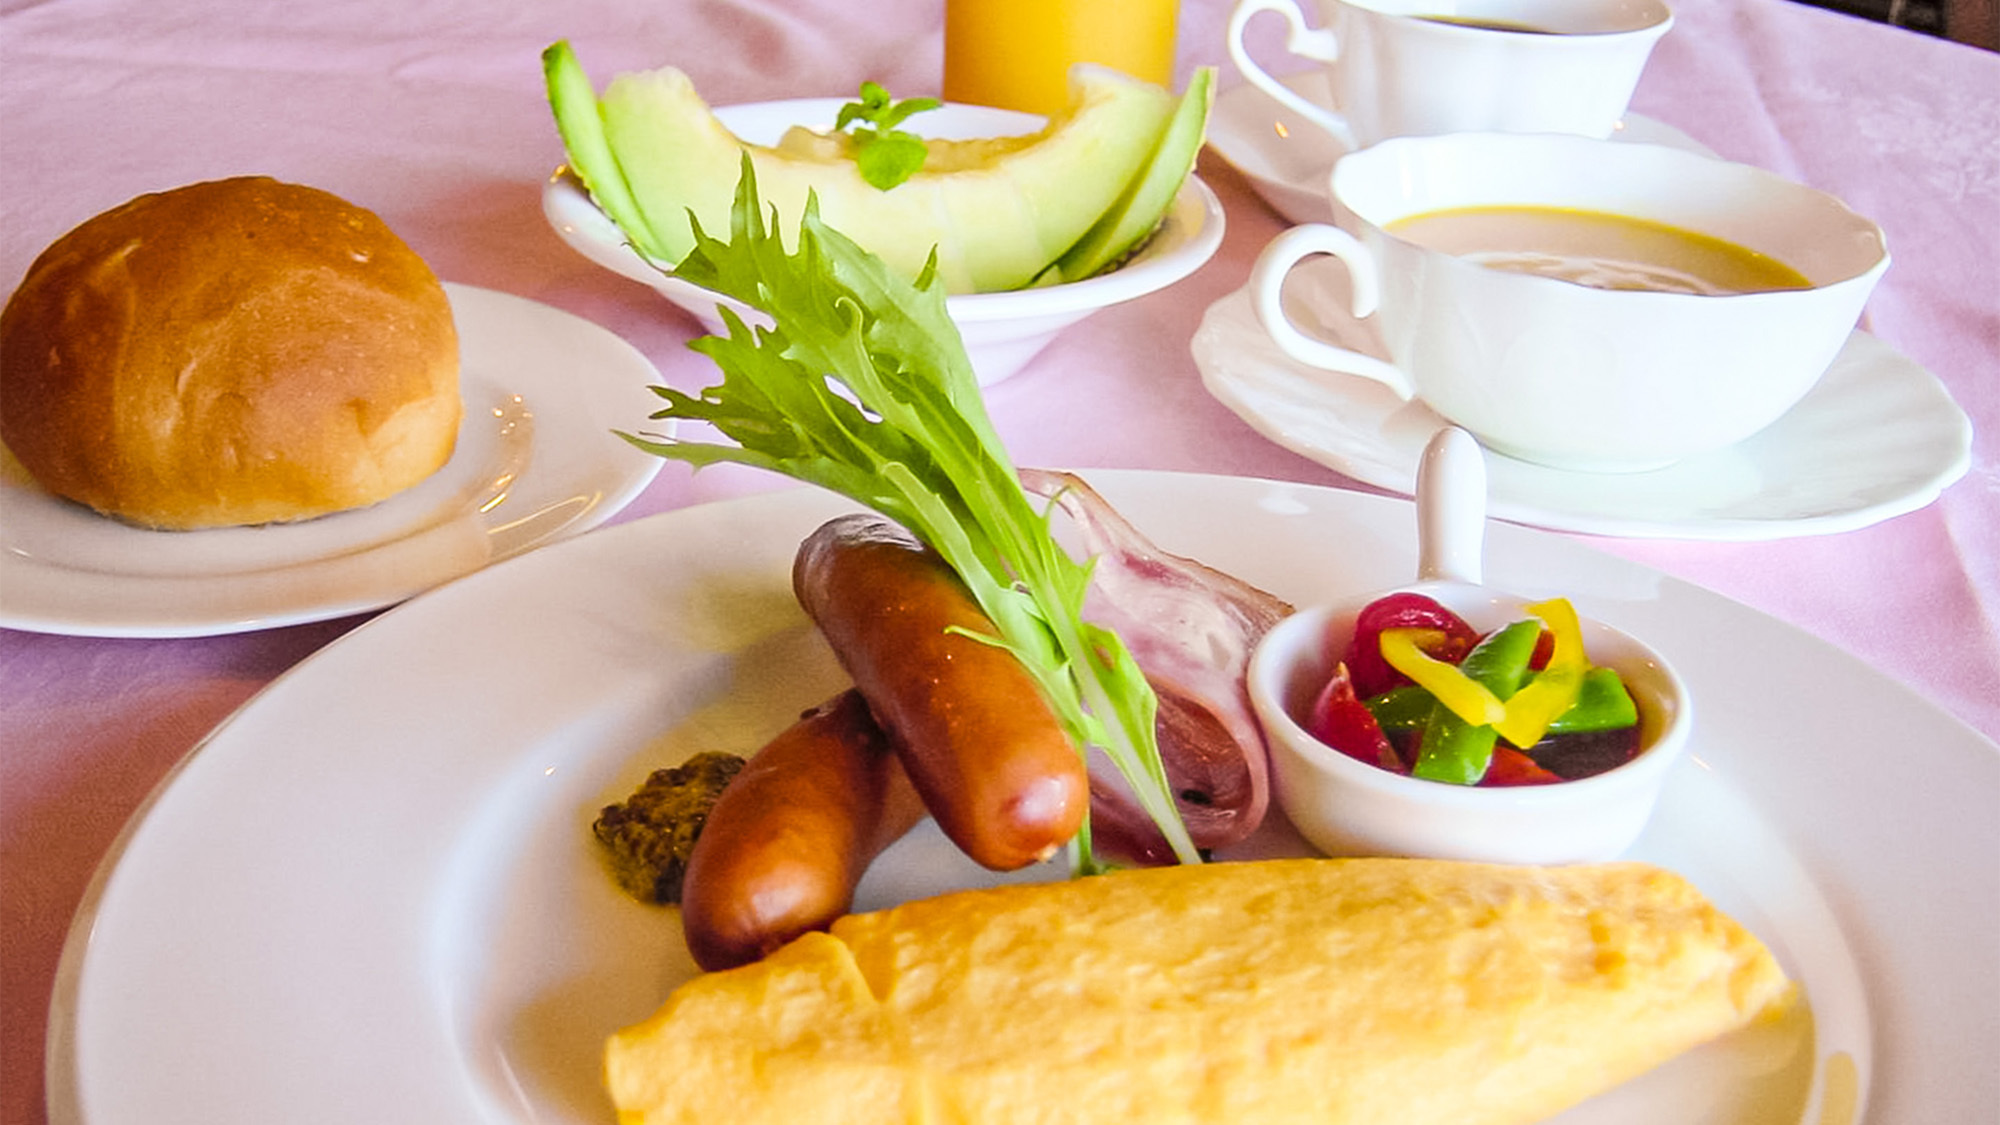 ・【朝食一例】パン・オムレツにサラダ、フルーツ付きの朝食で目覚めすっきり